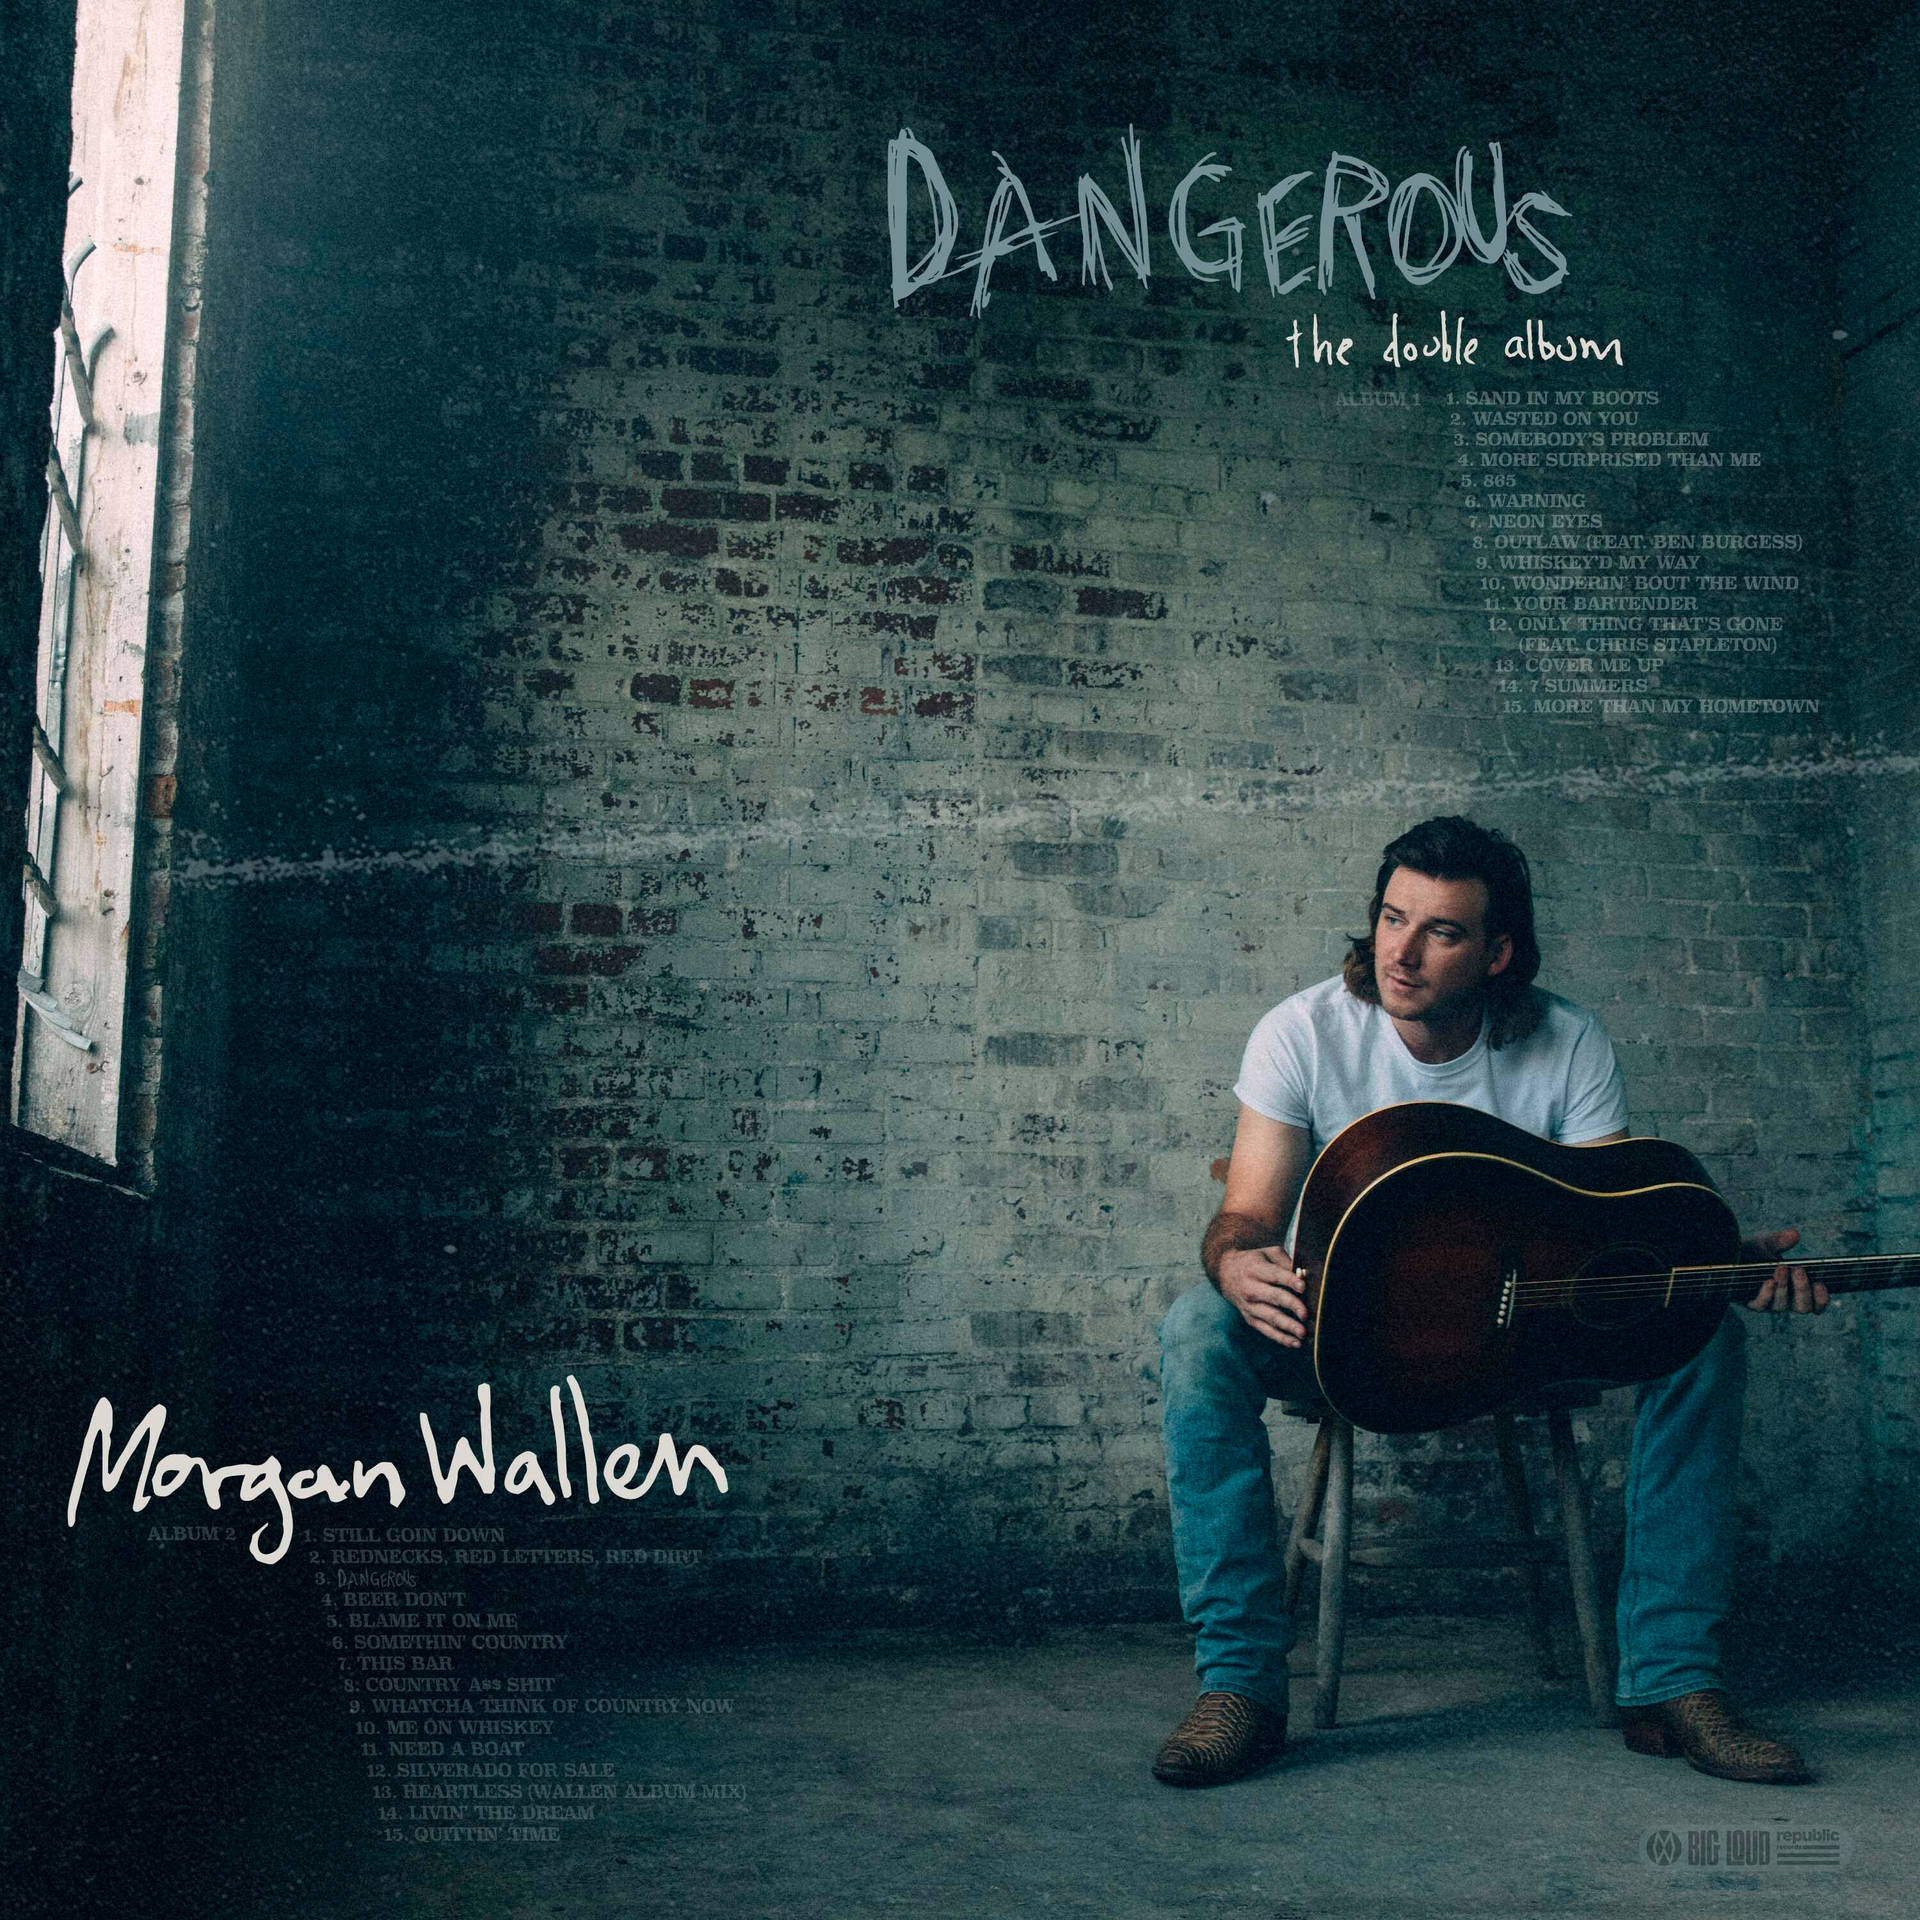 Morgan Wallen Studio Album Background